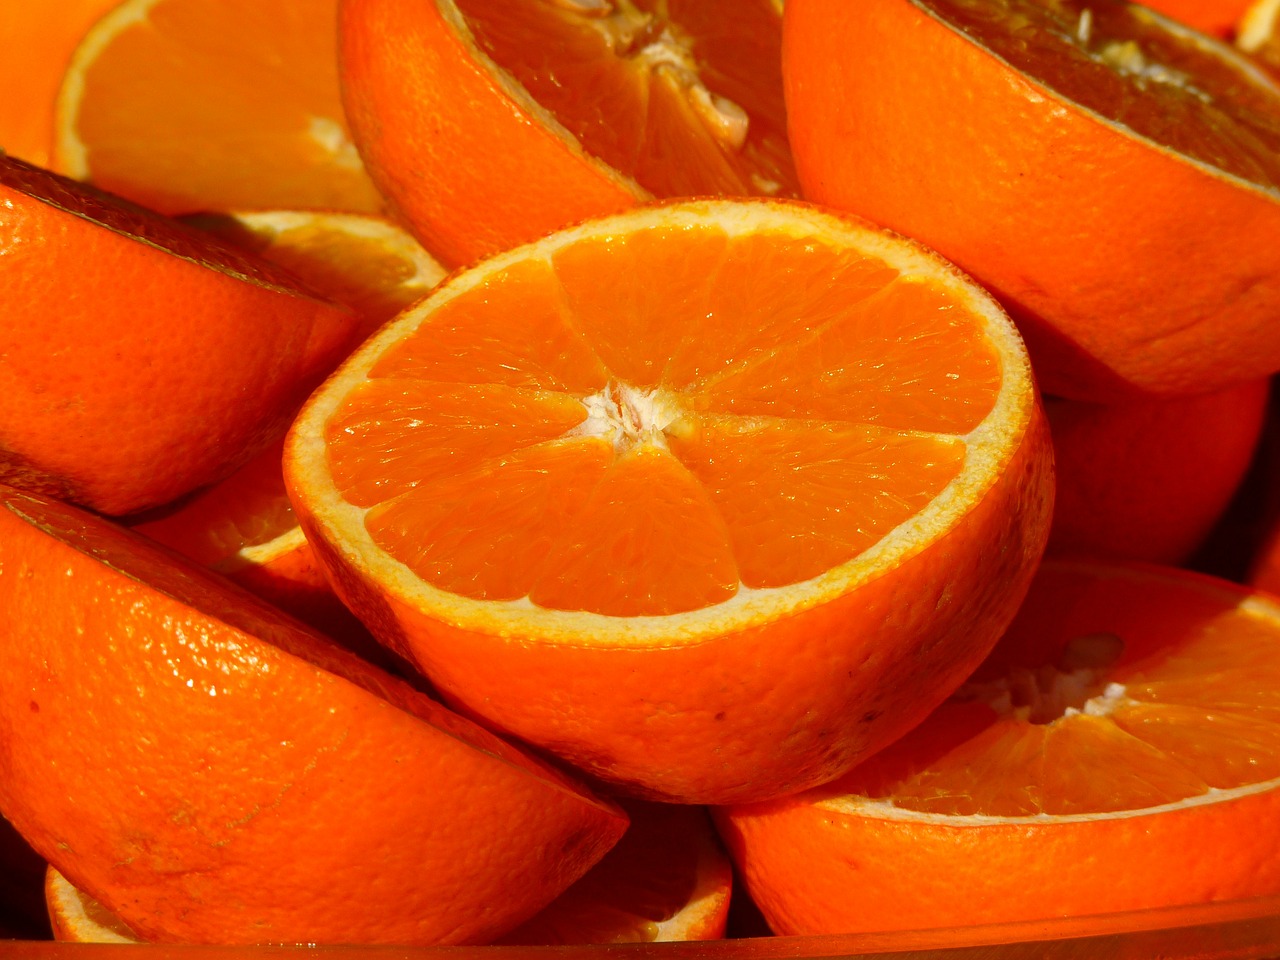 Was ist gesünder – die Orange oder nur ihr Saft?